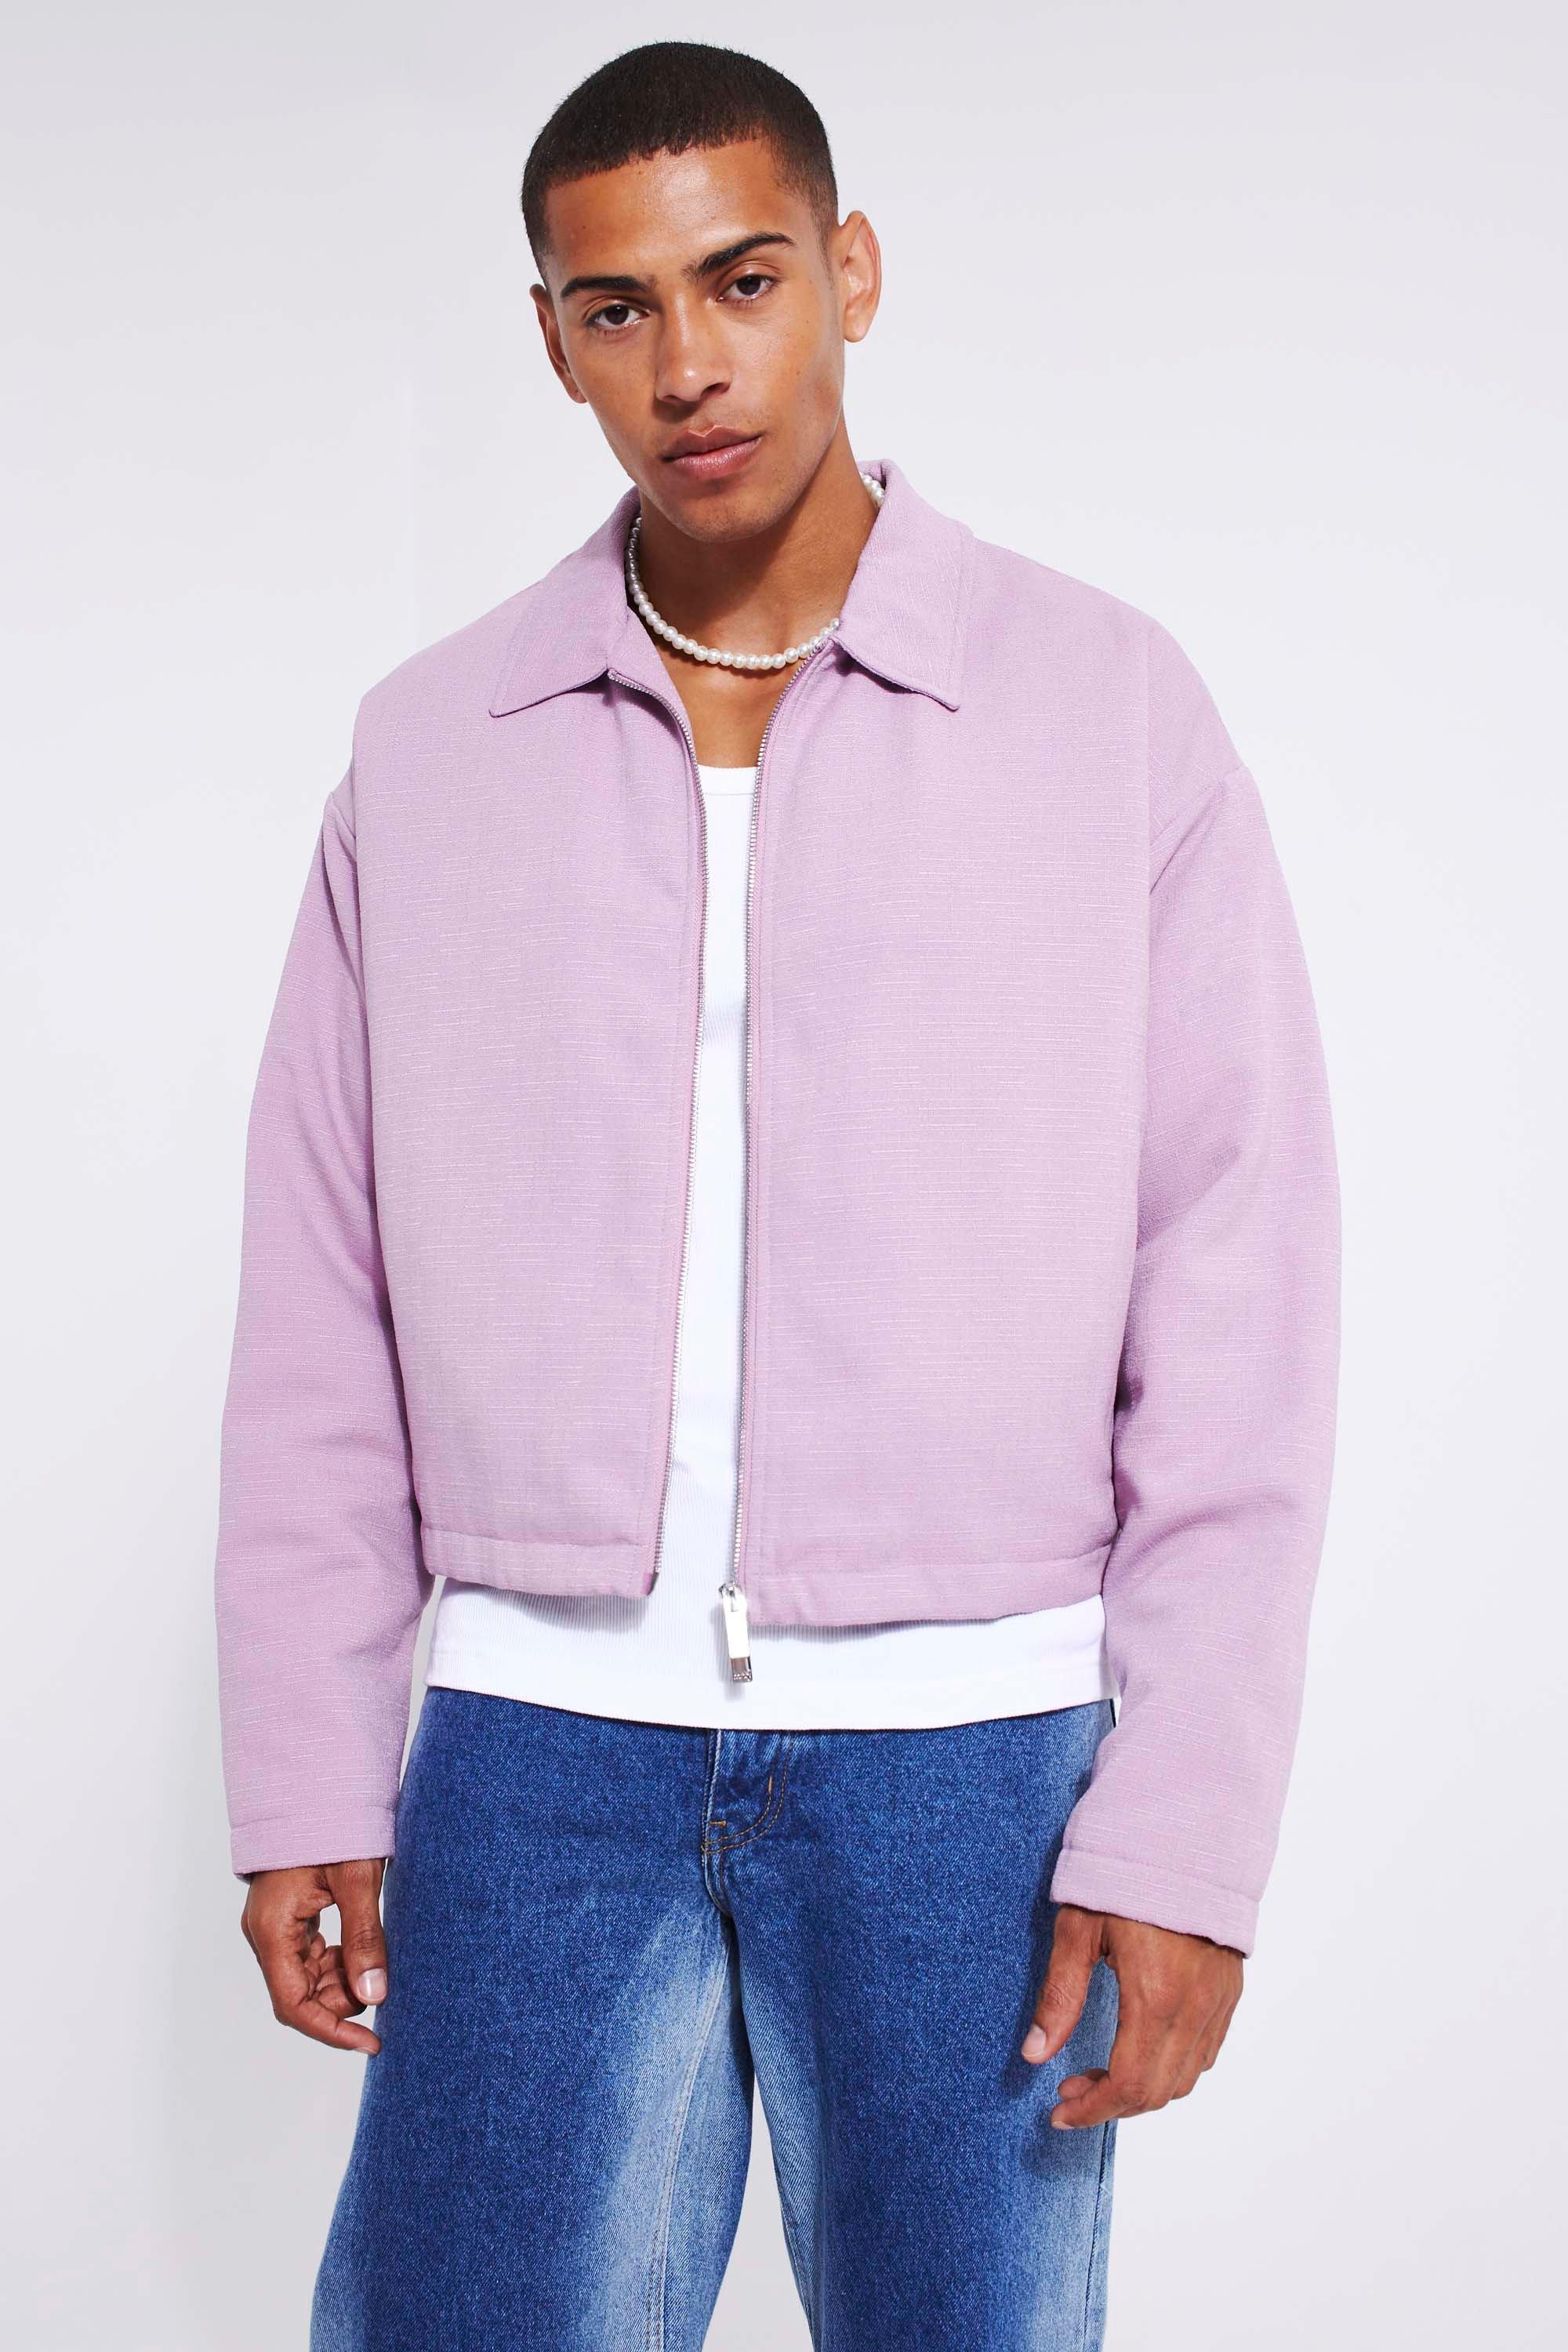 veste harrington bouclée homme - violet - xl, violet